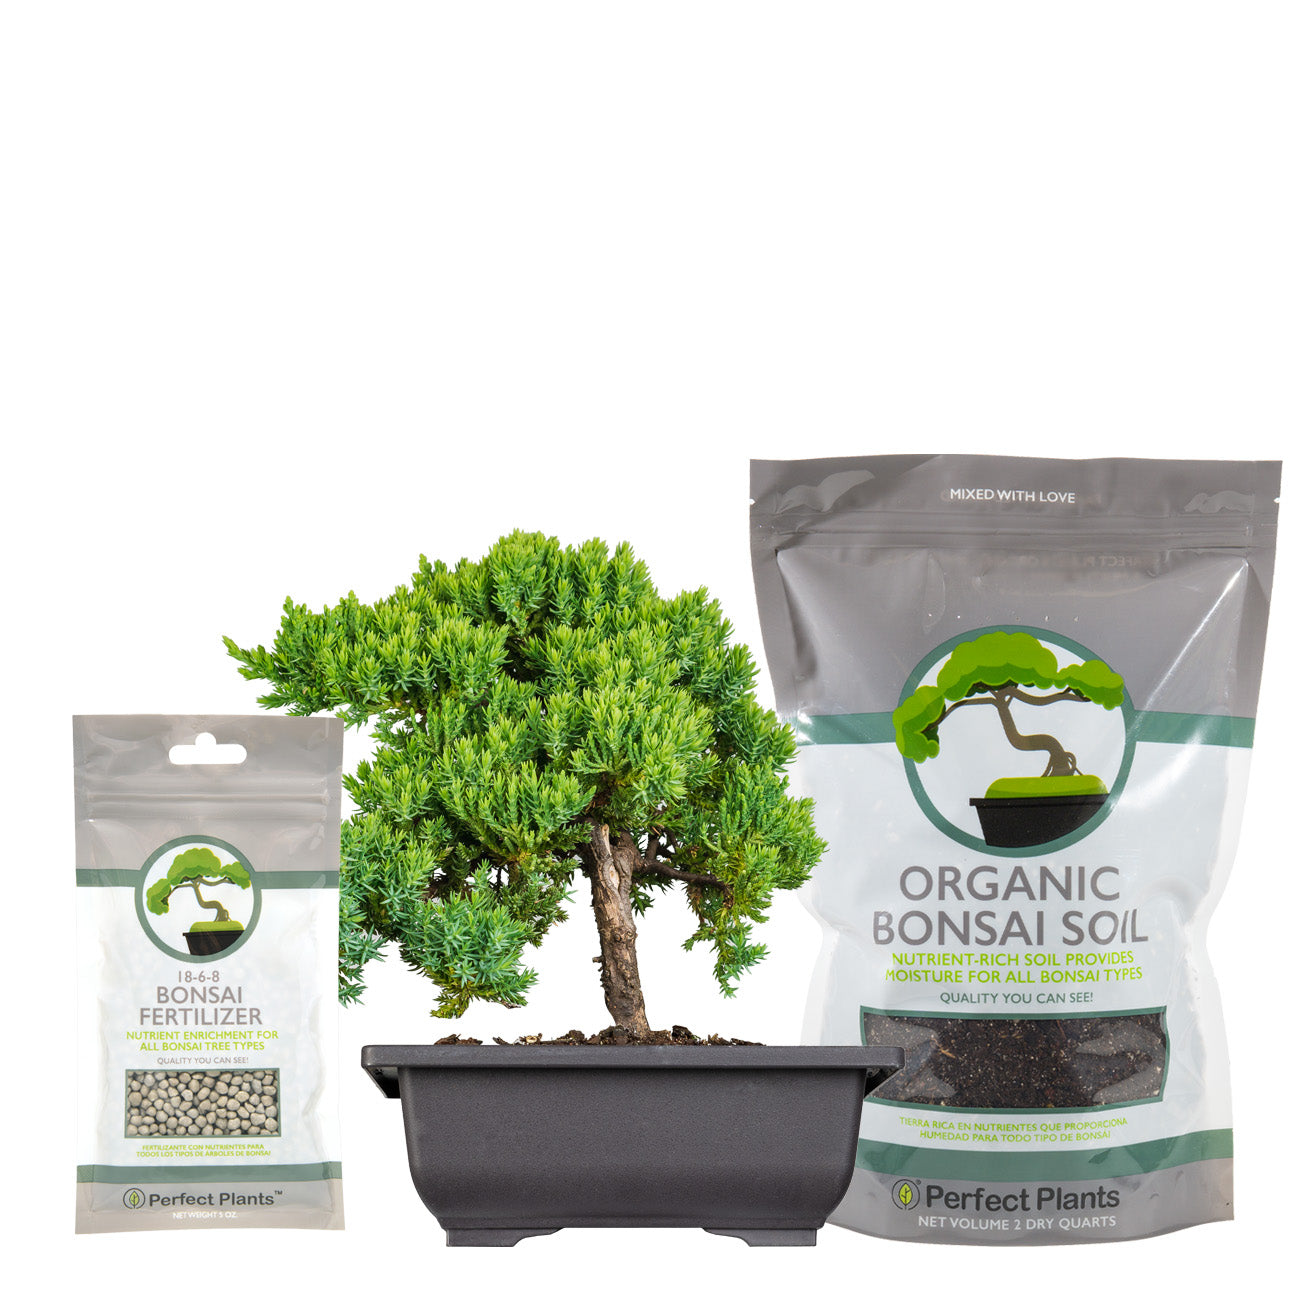 Exquisite bonsai tree kit to Dazzle Up Your Décor 